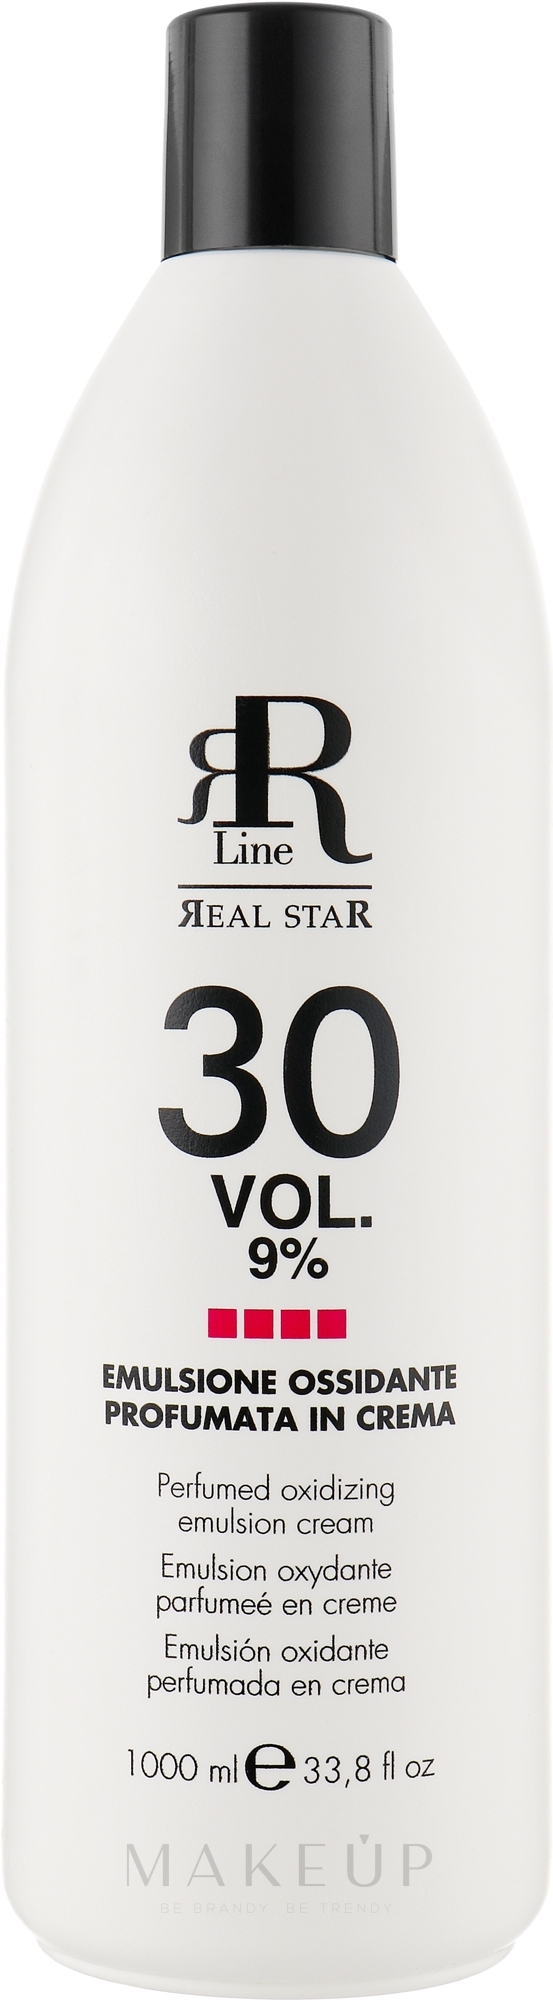 Parfümierte oxidierende Emulsion 9% - RR Line Parfymed Ossidante Emulsione Cream 9% 30 Vol — Bild 1000 ml